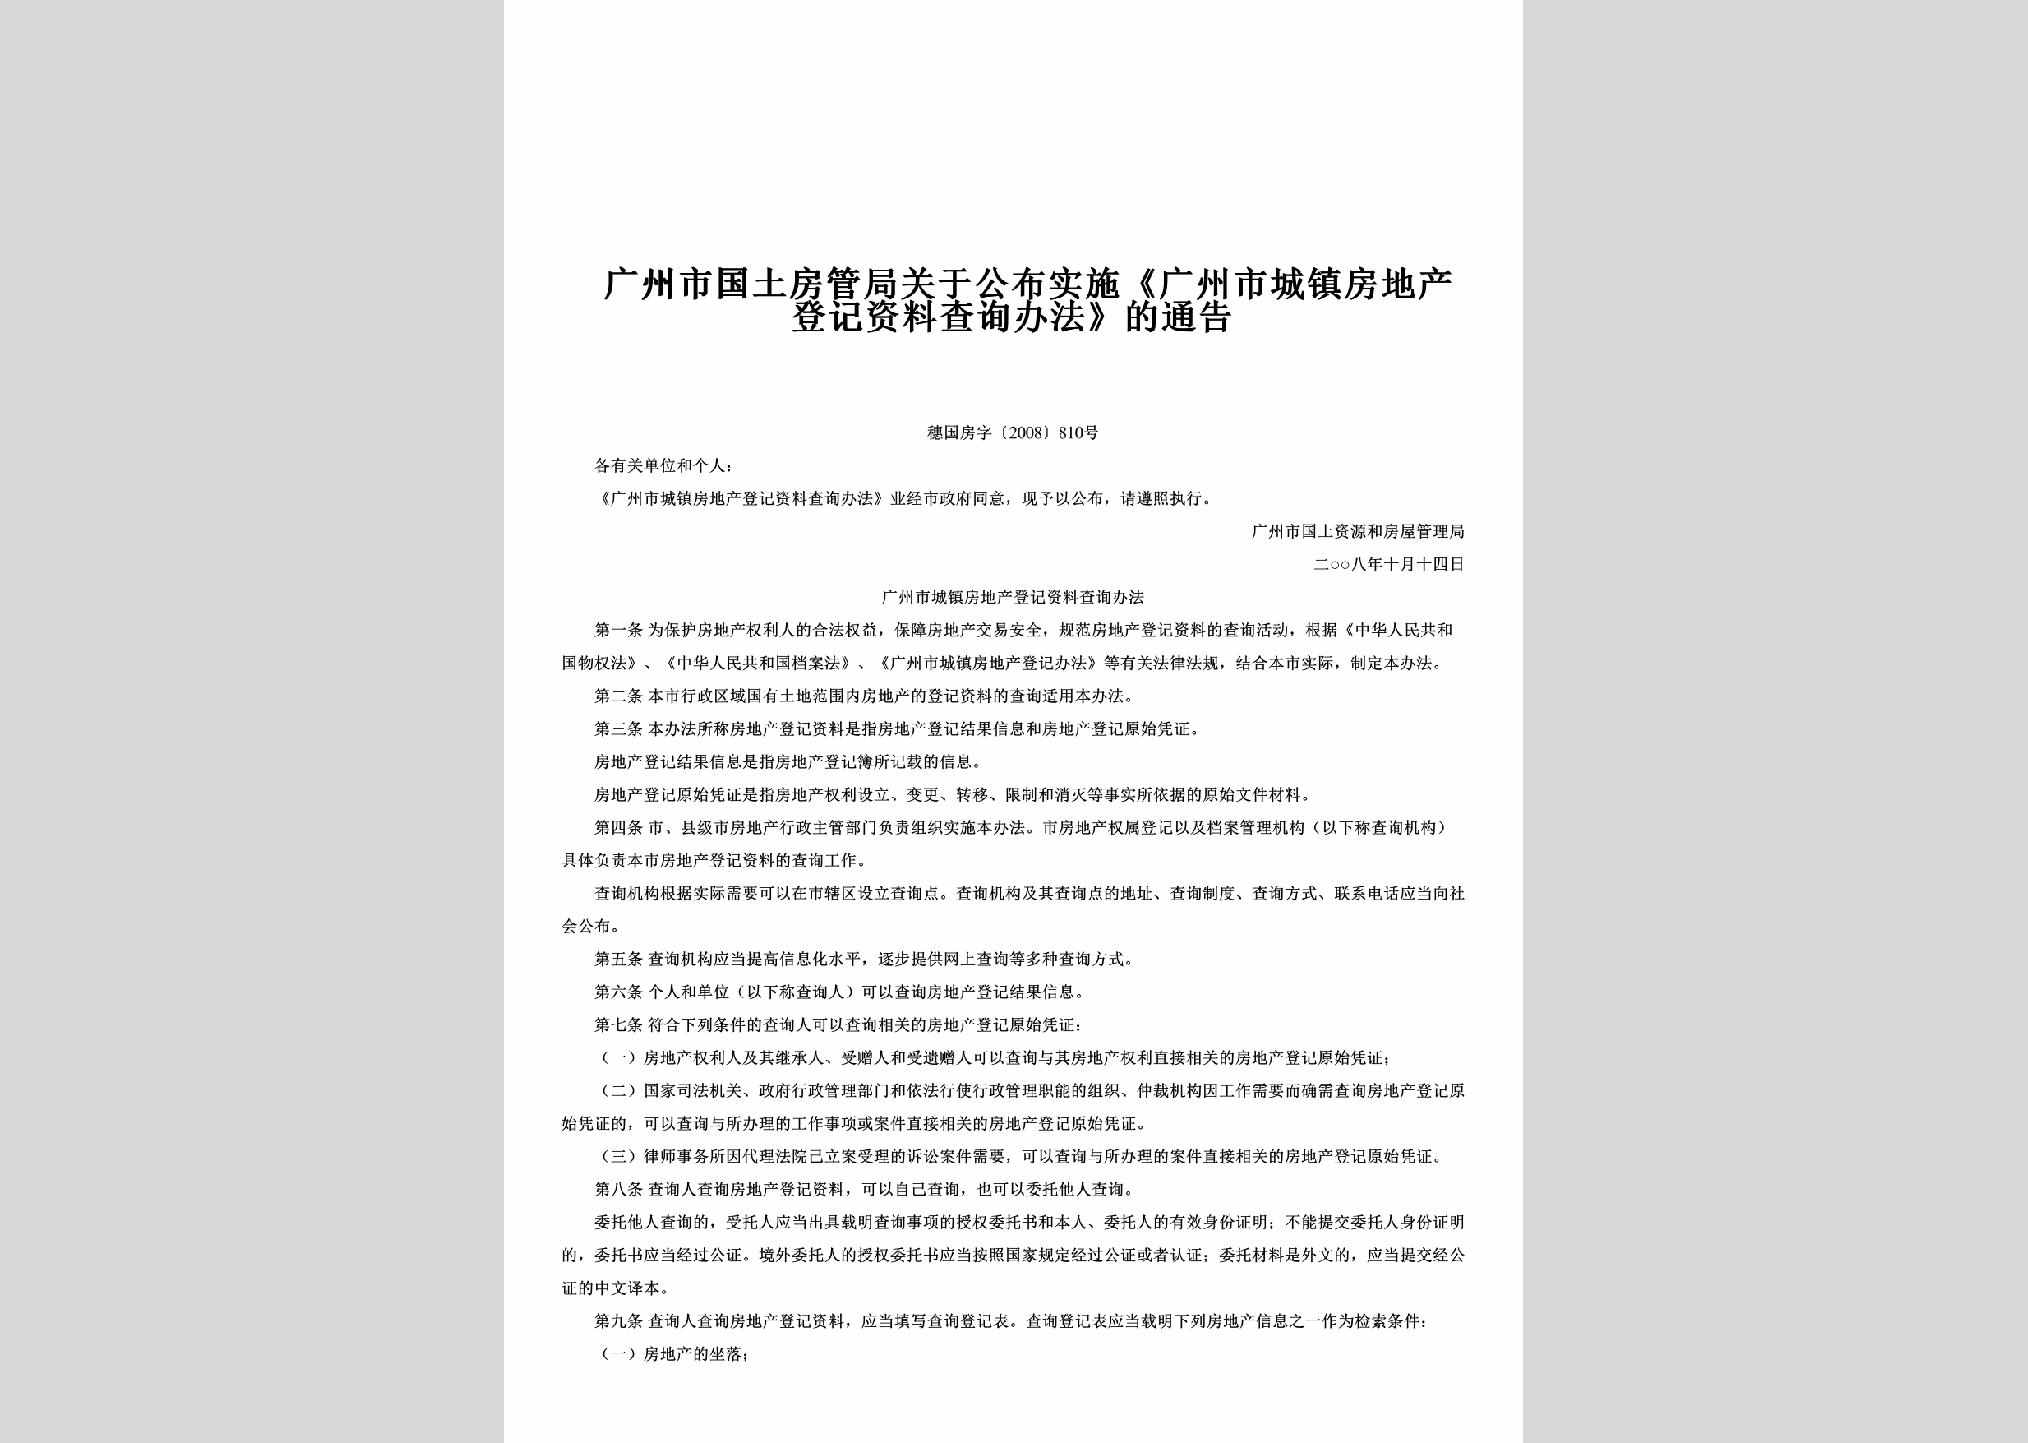 穗国房字[2008]810号：关于公布实施《广州市城镇房地产登记资料查询办法》的通告